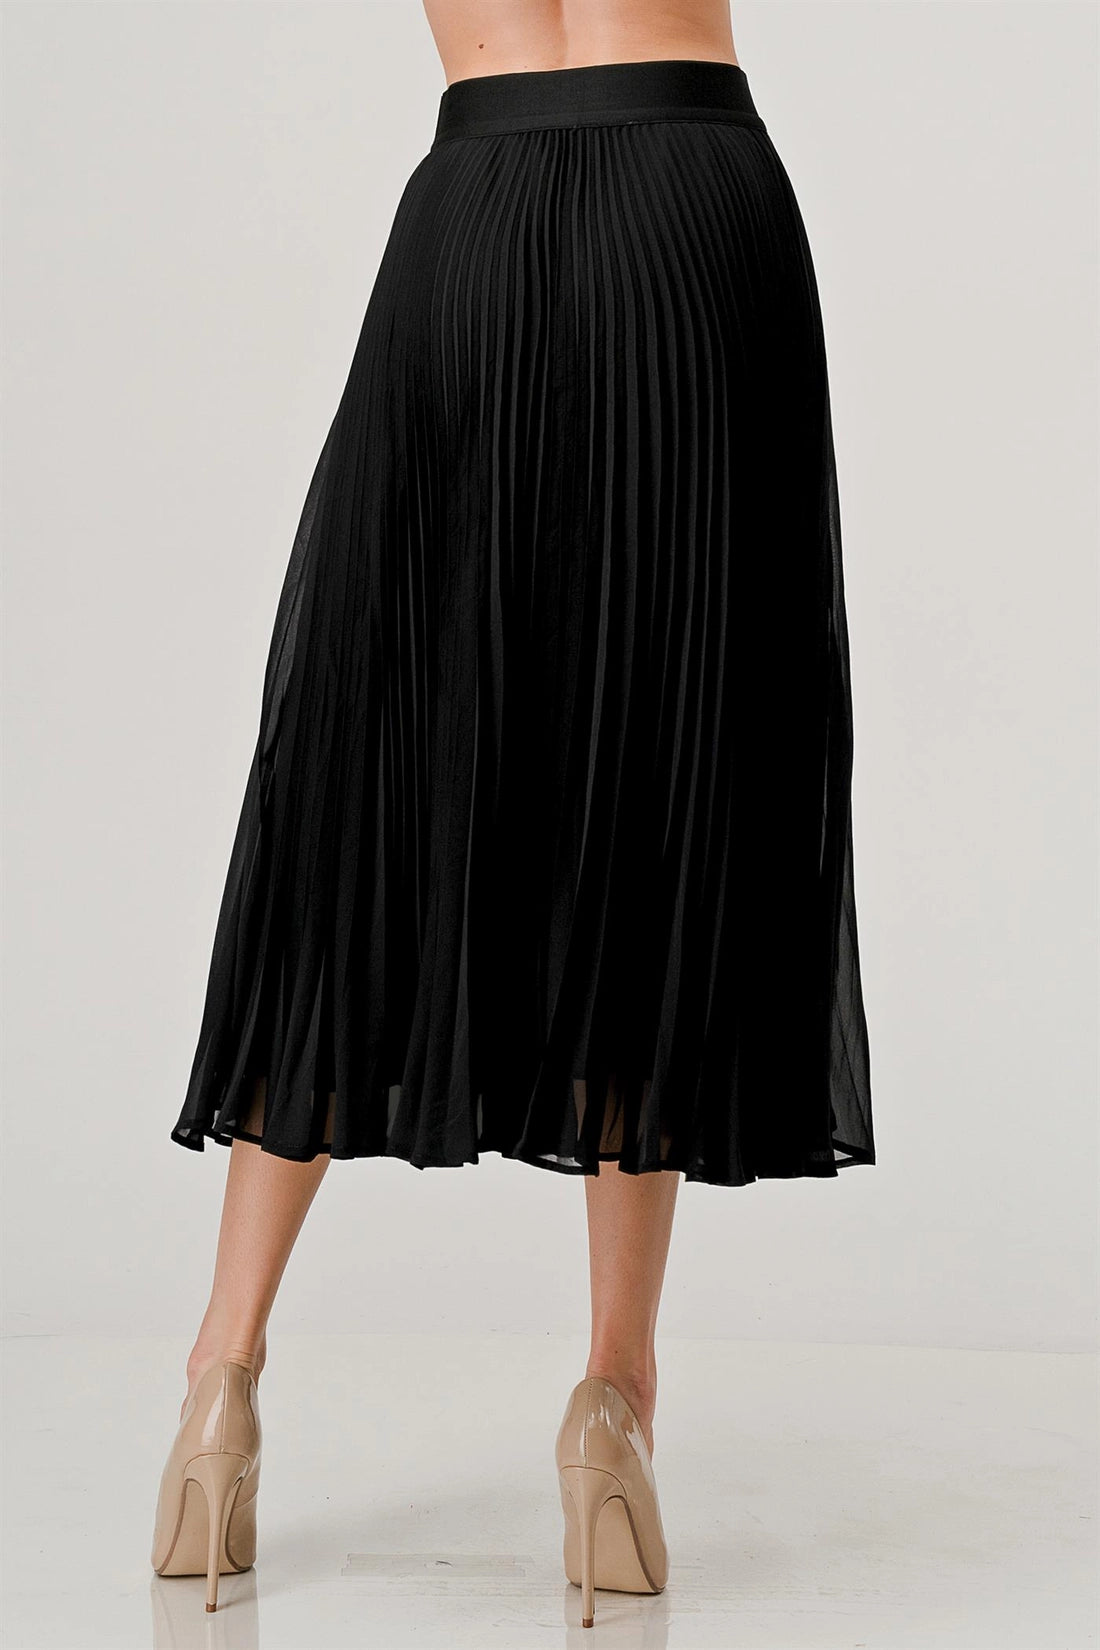 Onyx Black Pleated Skirt